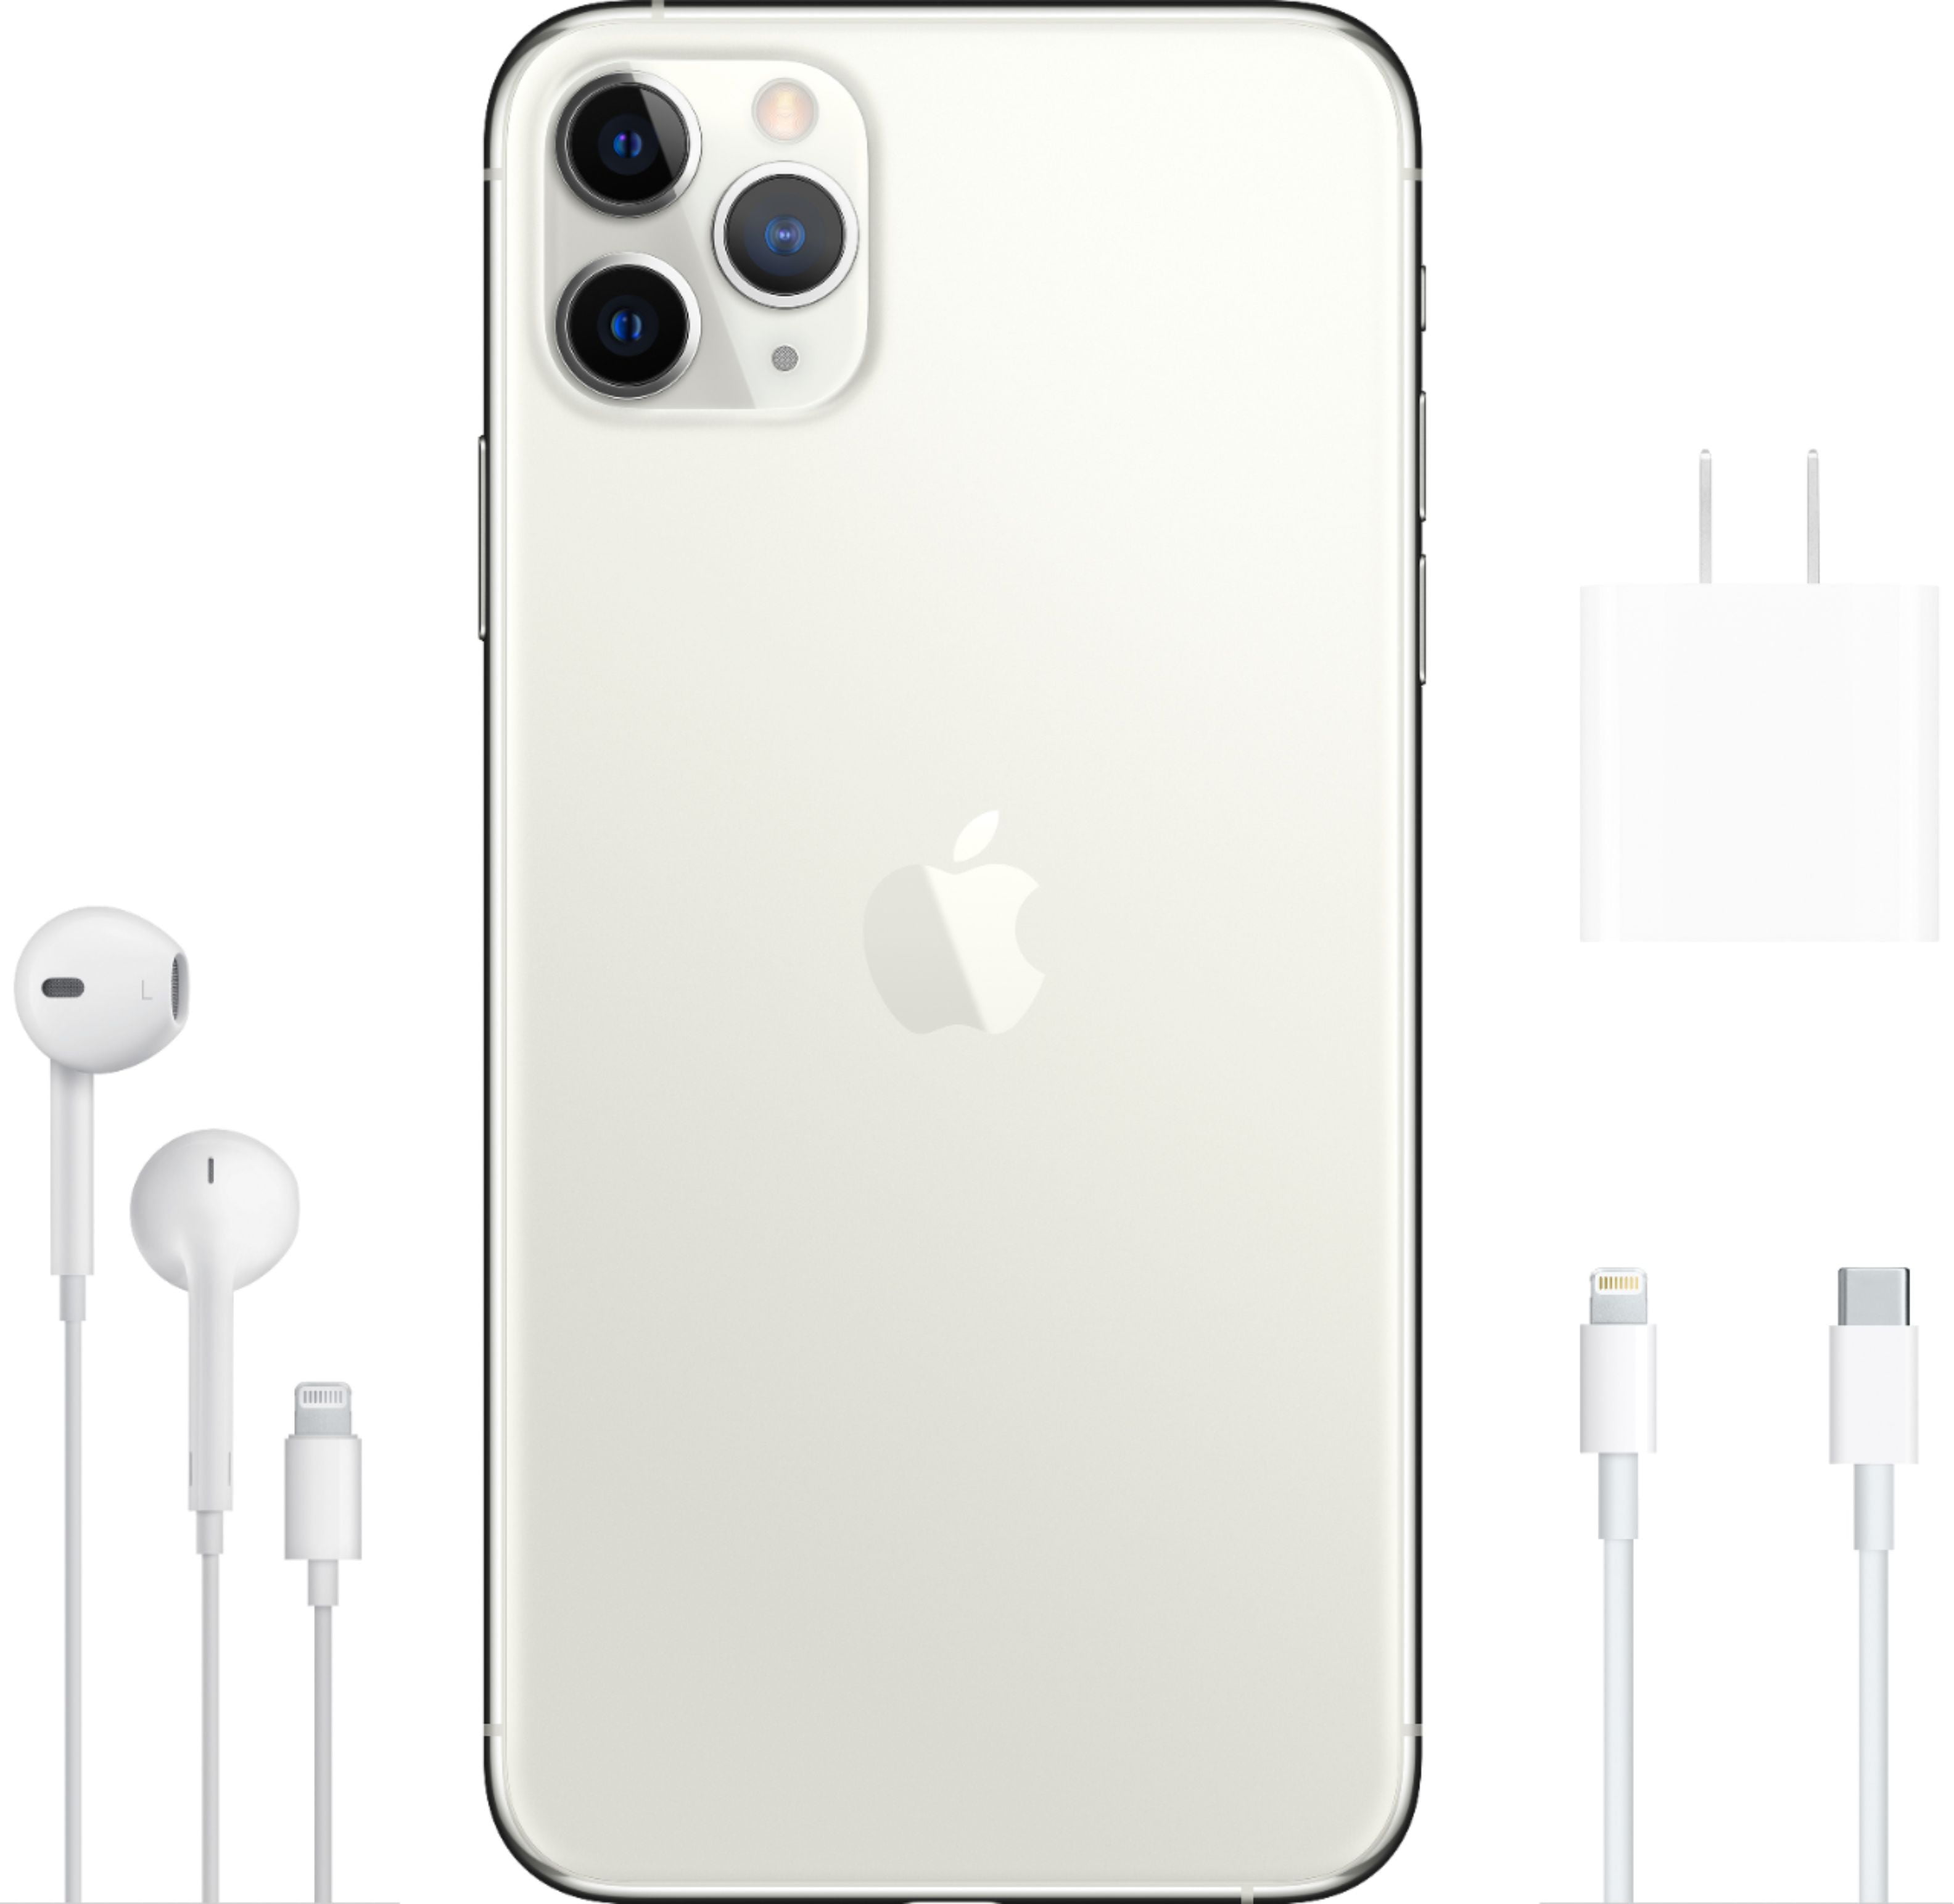 週間売れ筋 iPhone11pro シルバー 64GB SIMフリー - スマートフォン本体 - bu.edu.kz